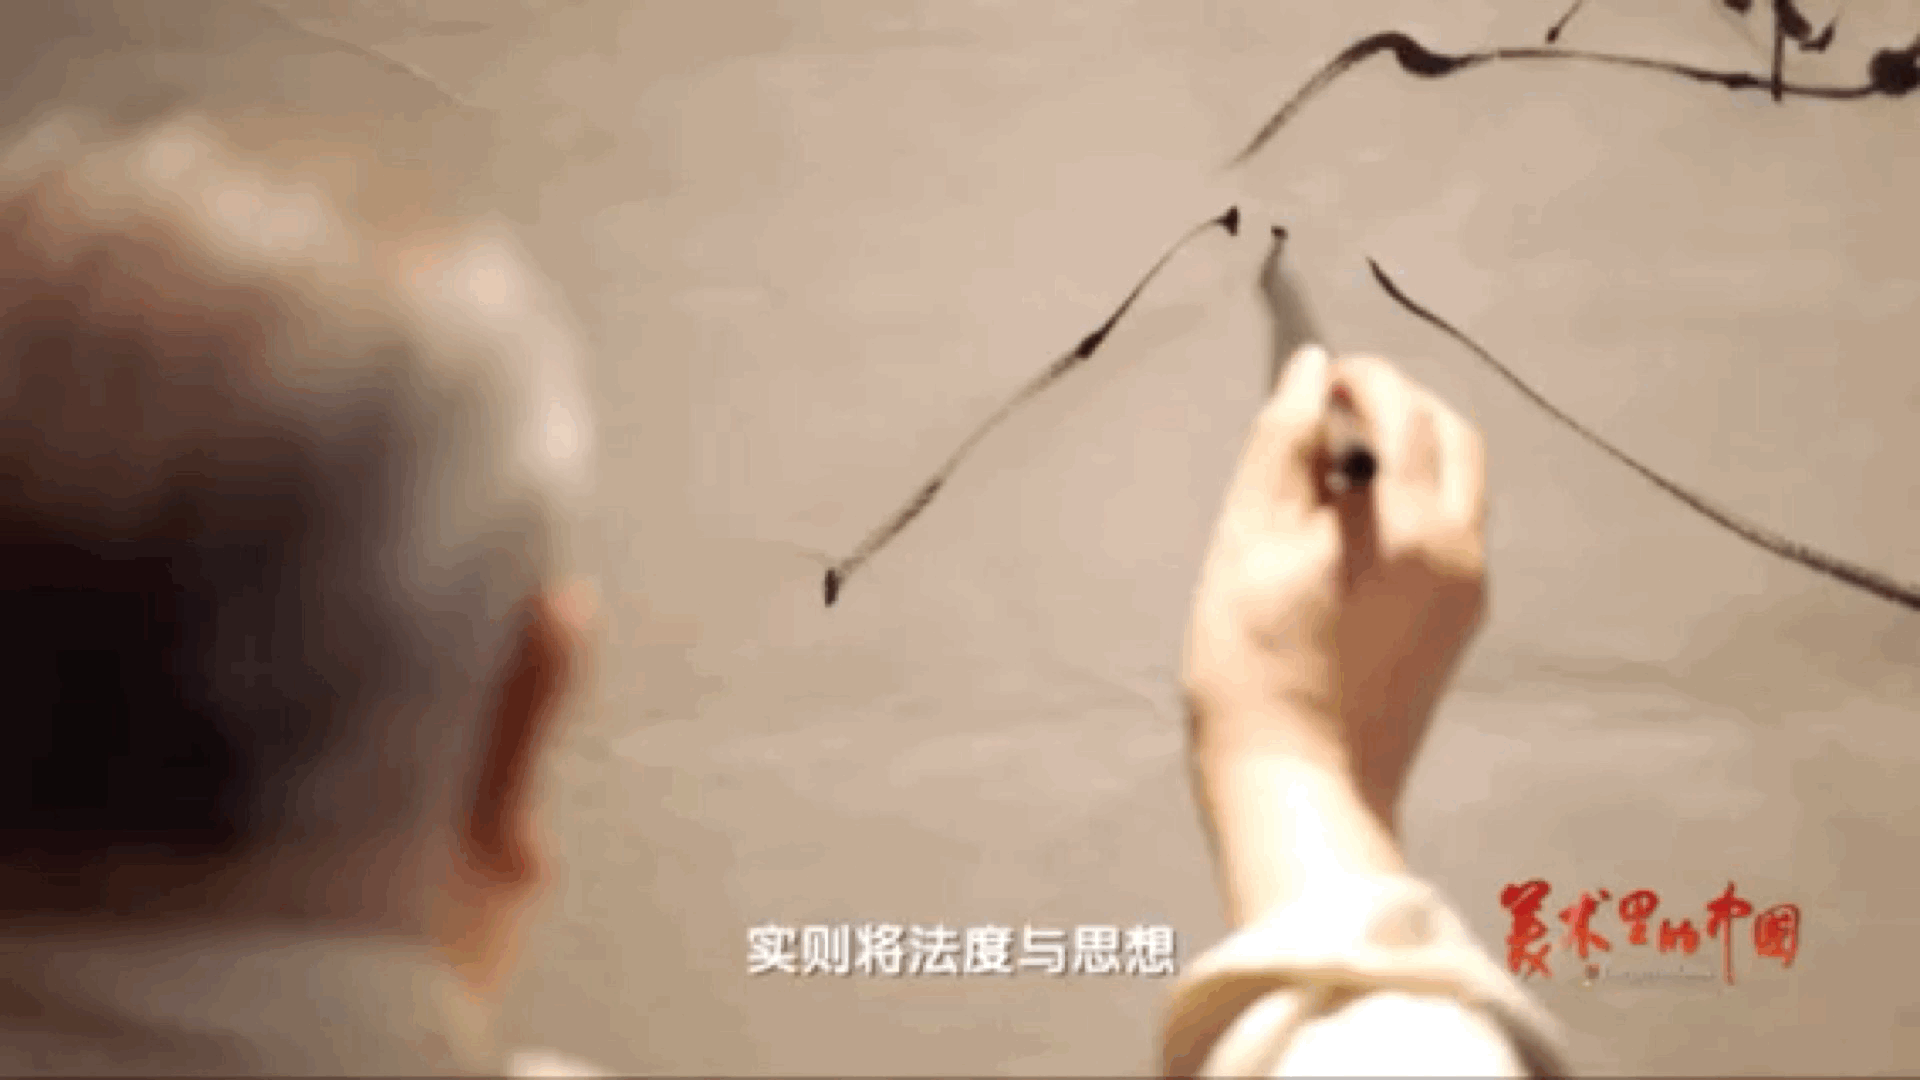 回归古典 弘扬传统 《美术里的中国》邀您共赏范曾之作《老子出关》-翼萌网